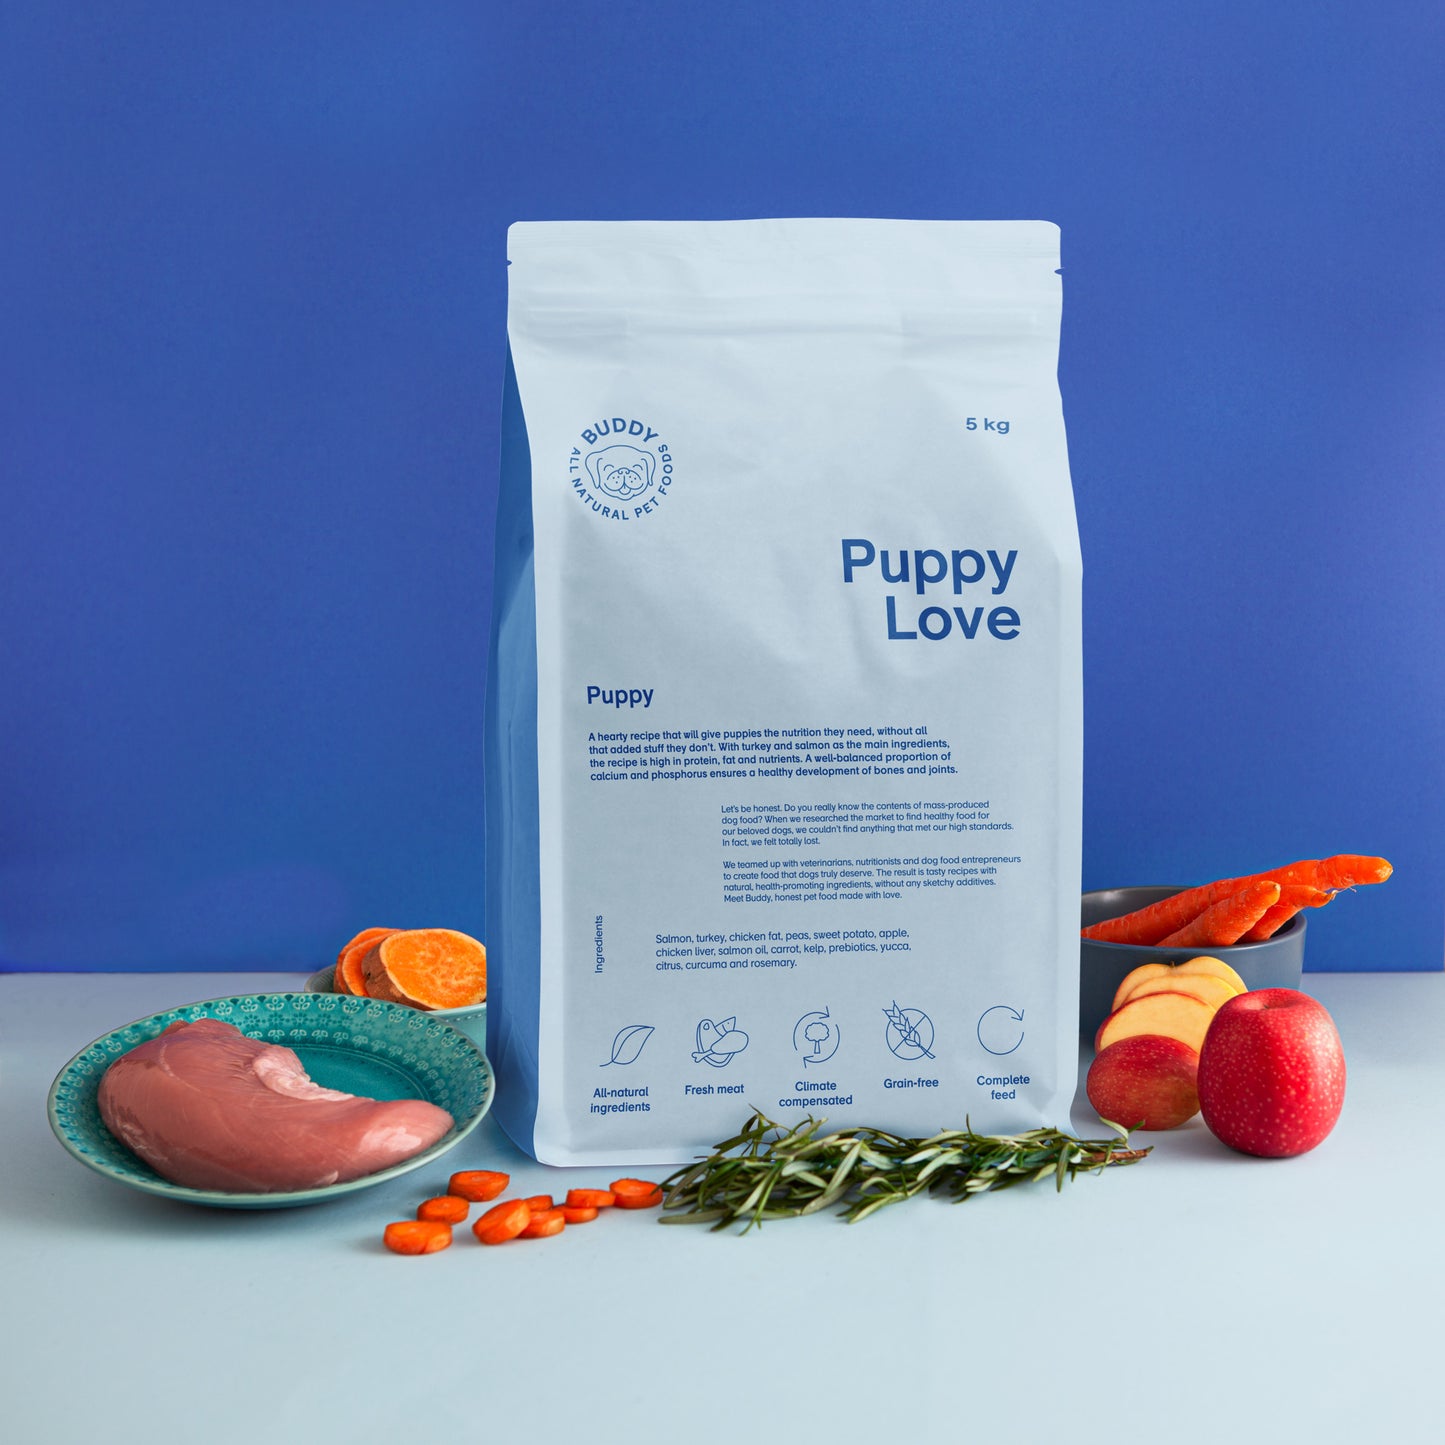 Buddy • Hrană Uscată Puppy Love (junior) 2kg 